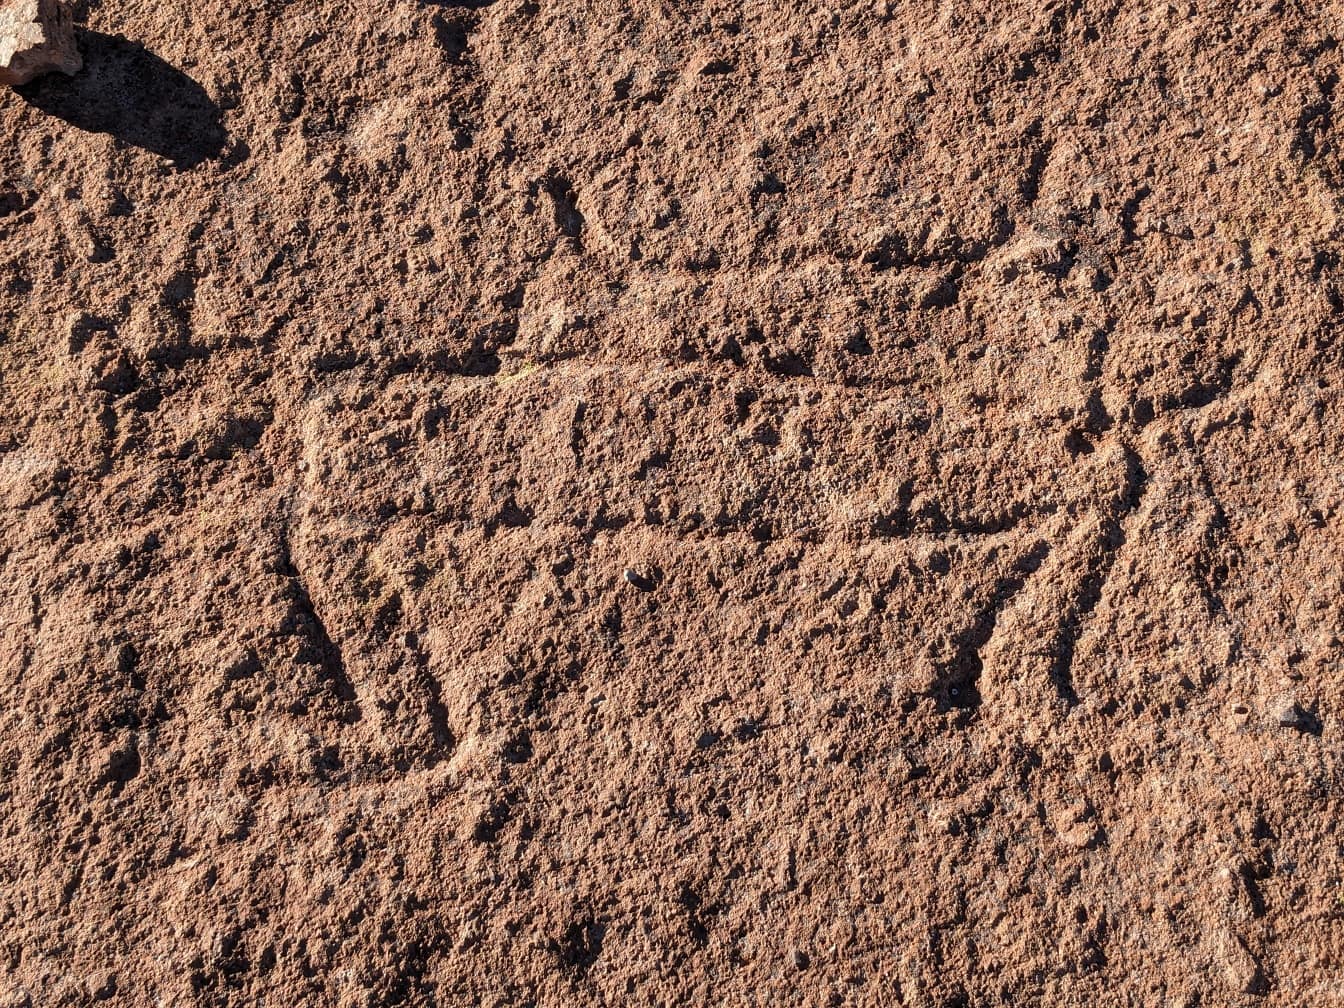 古代のペトログリフ、先史時代にさかのぼる南アメリカの岩の彫刻